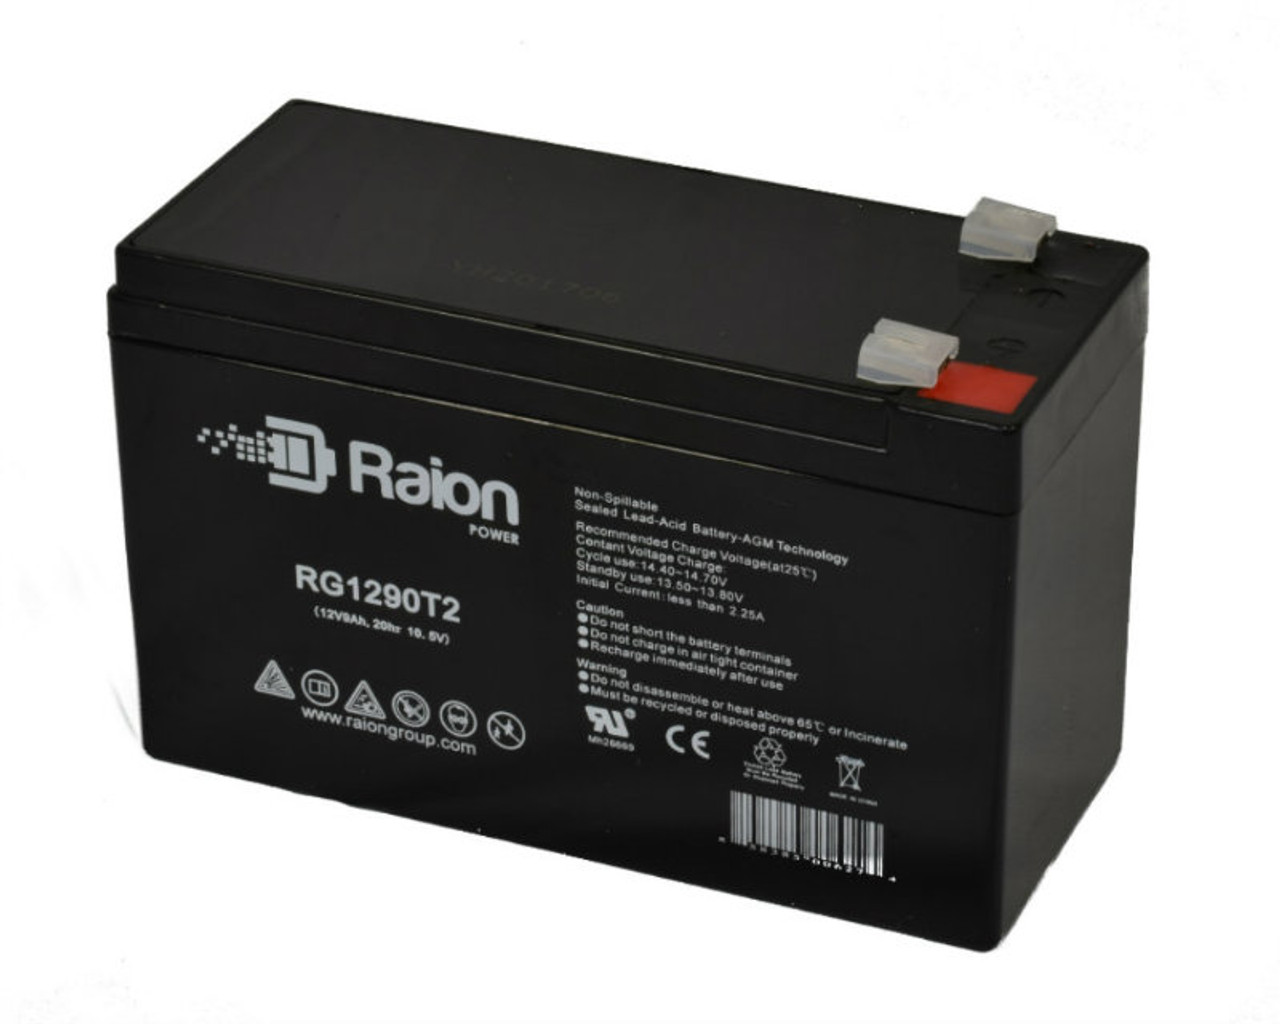 Raion Power RG1290T2 12V 9Ah AGM Battery for Vision CP1290A